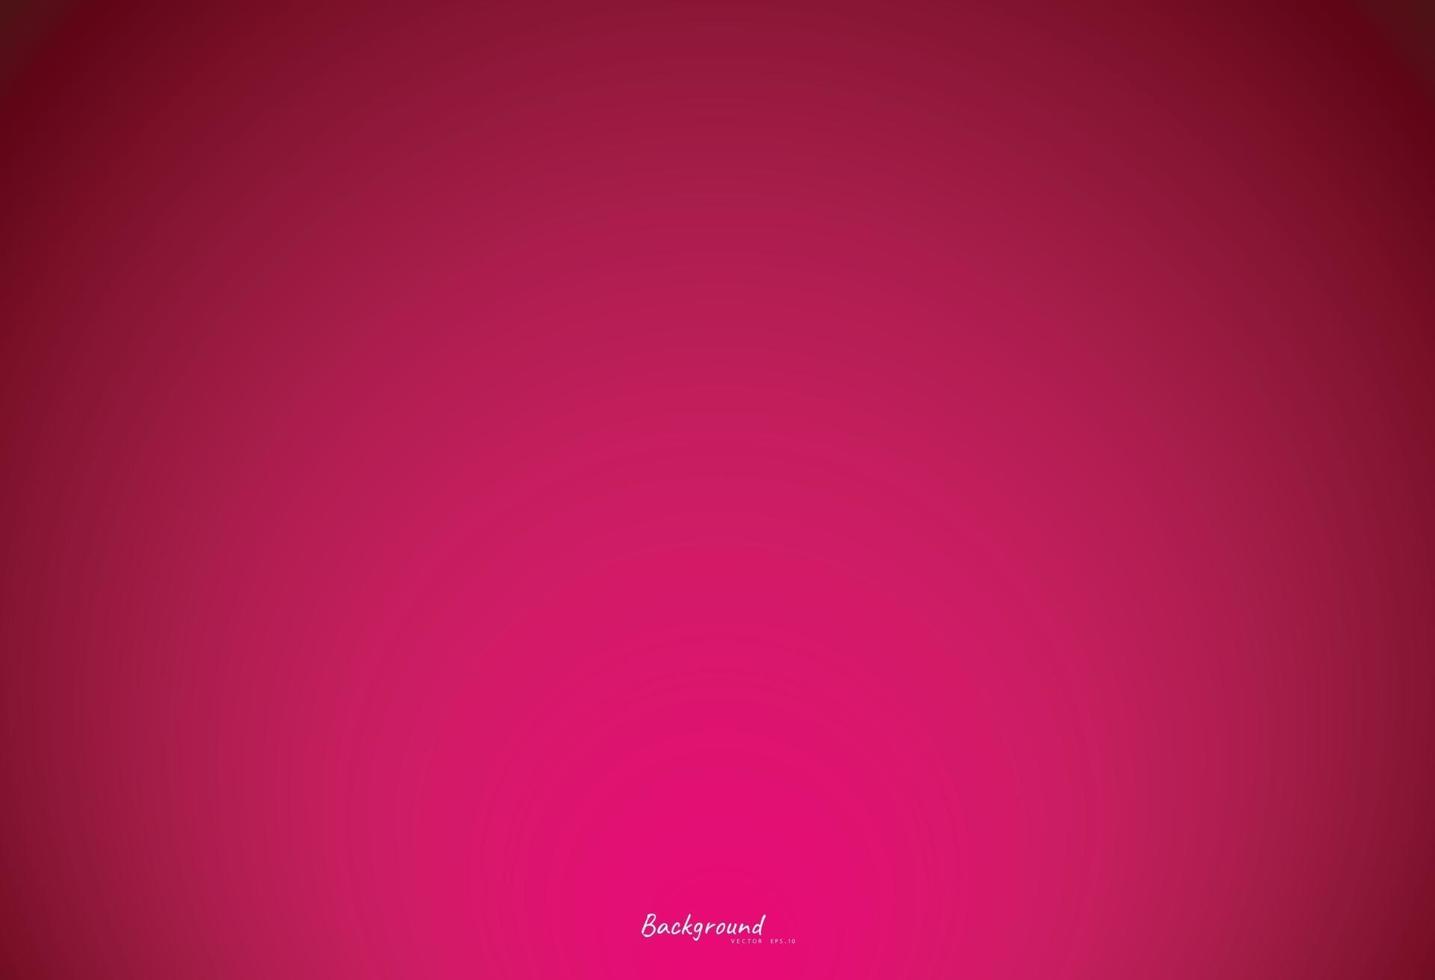 kleurrijke roze achtergrond vector